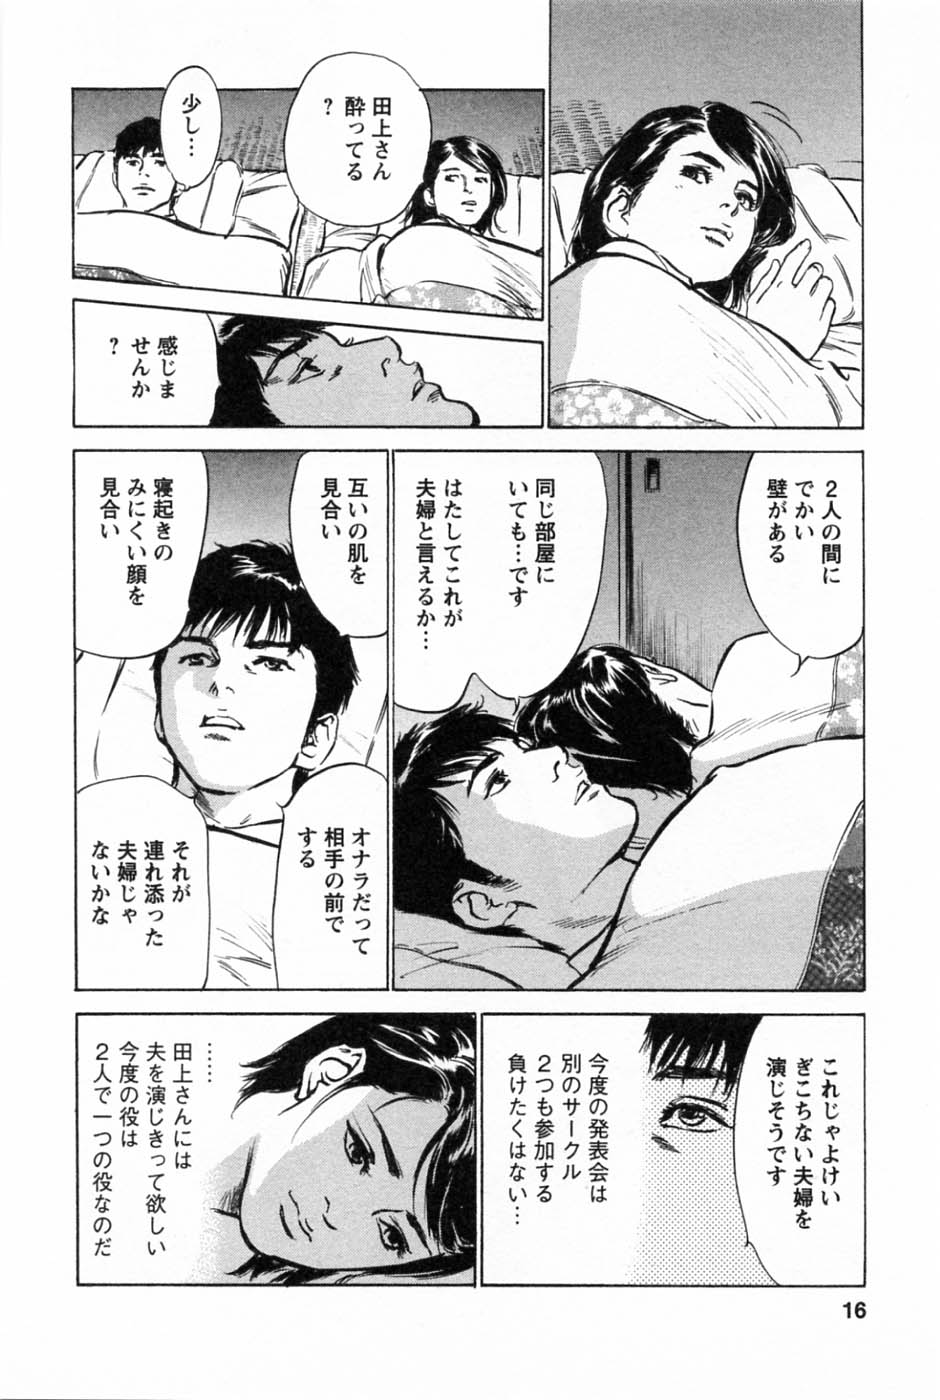 [Tomisawa Chinatsu, Hazuki Kaoru] My Pure Lady Vol.2 page 20 full